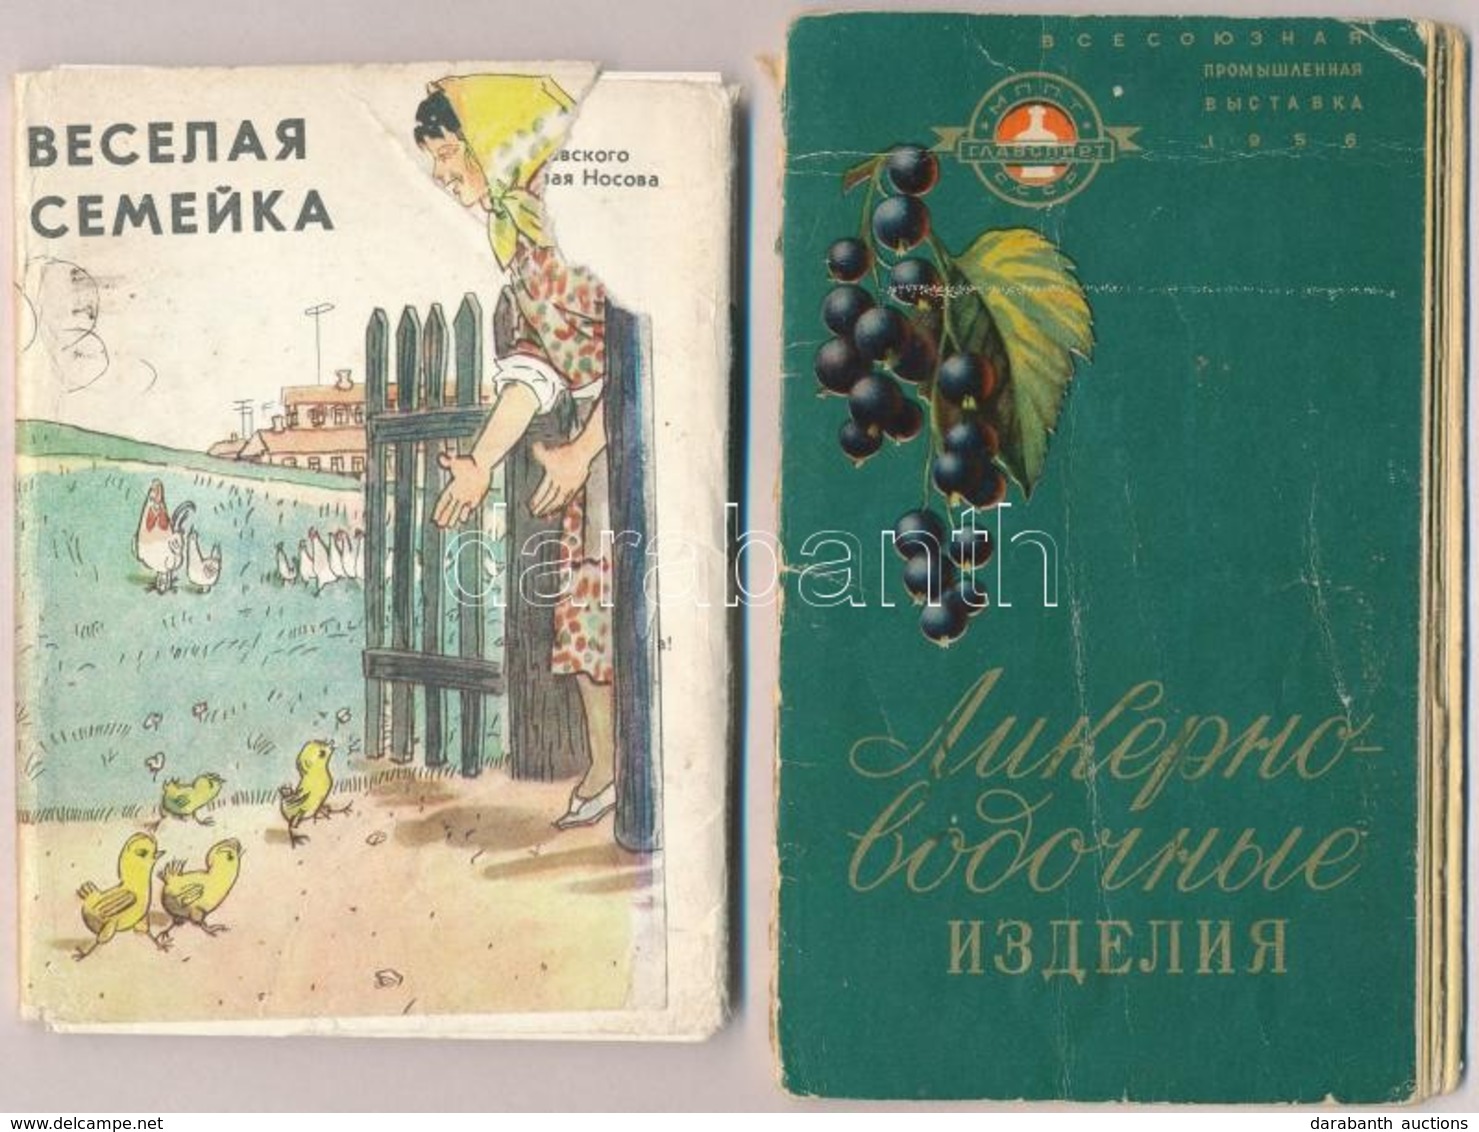 ** 1 Db MODERN Szovjet Mese Képeslap Sorozat 18 Lappal és Egy Szovjet Reklám Prospektus / A Modern Soviet Postcard Serie - Unclassified